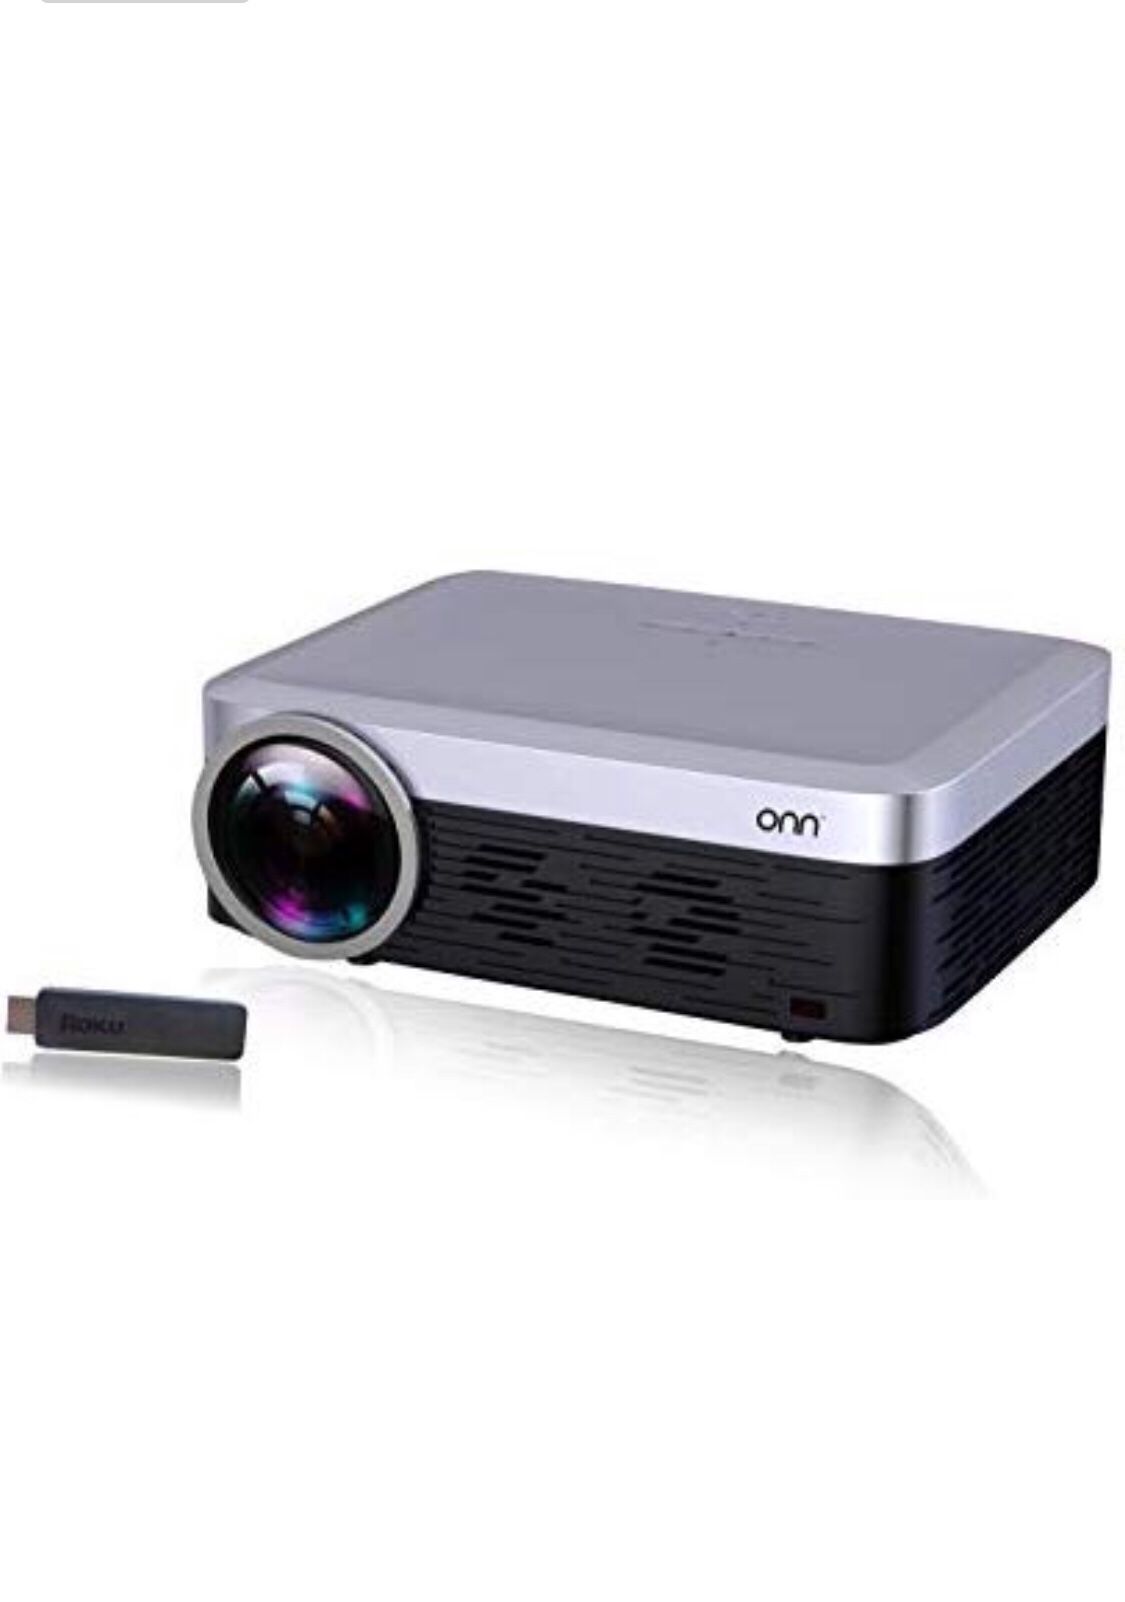 ONN ONA19AV901 Full HD 1080p Native 920X1080 Portable Projector //still in box